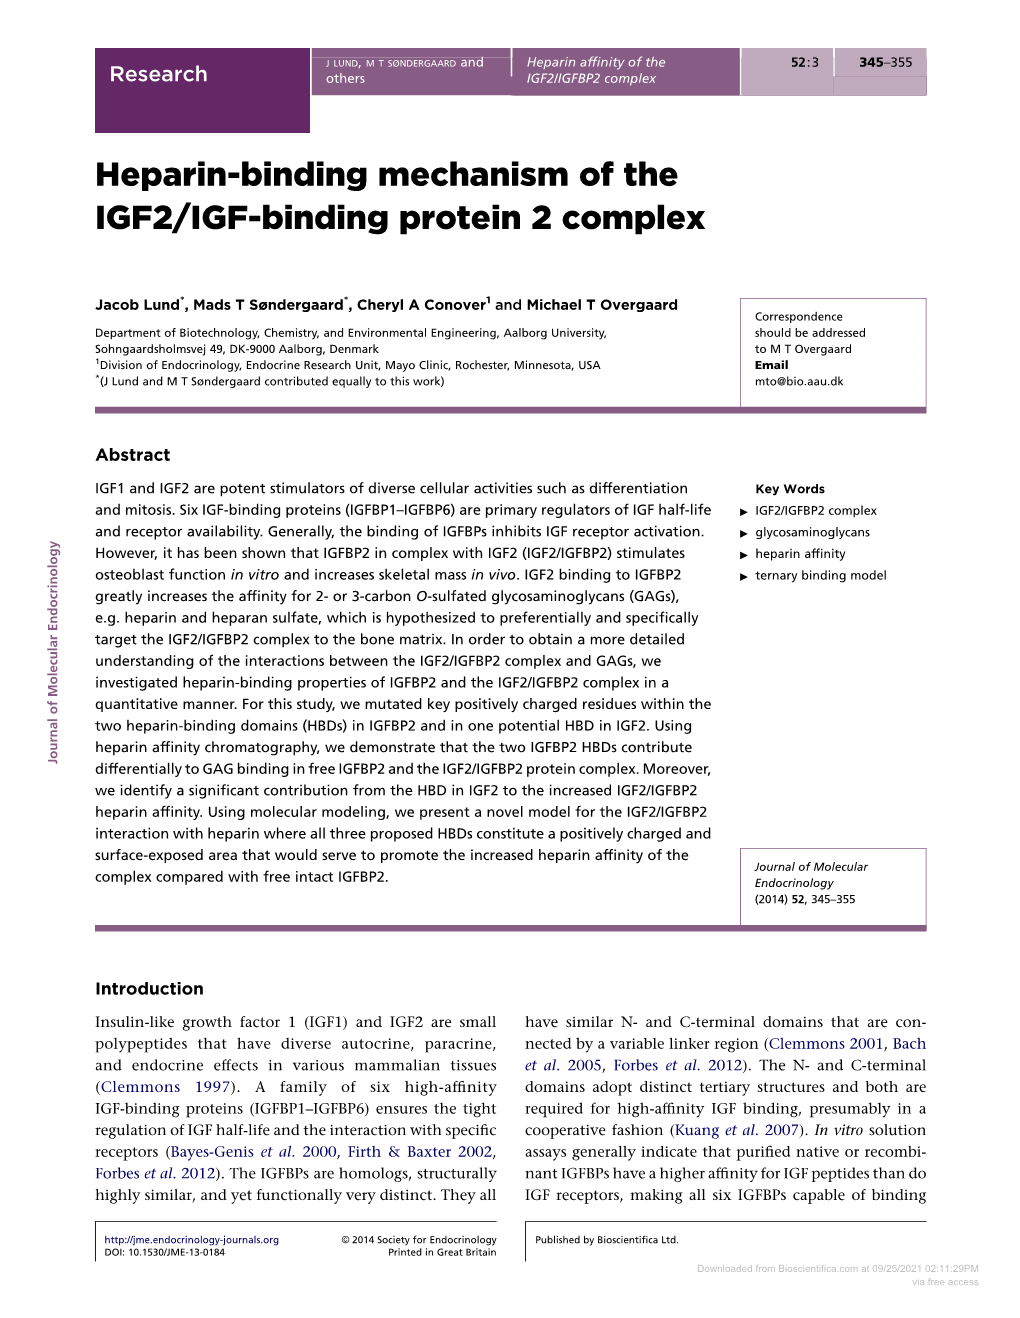 Heparin-Binding Mechanism of the IGF2/IGF-Binding Protein 2 Complex